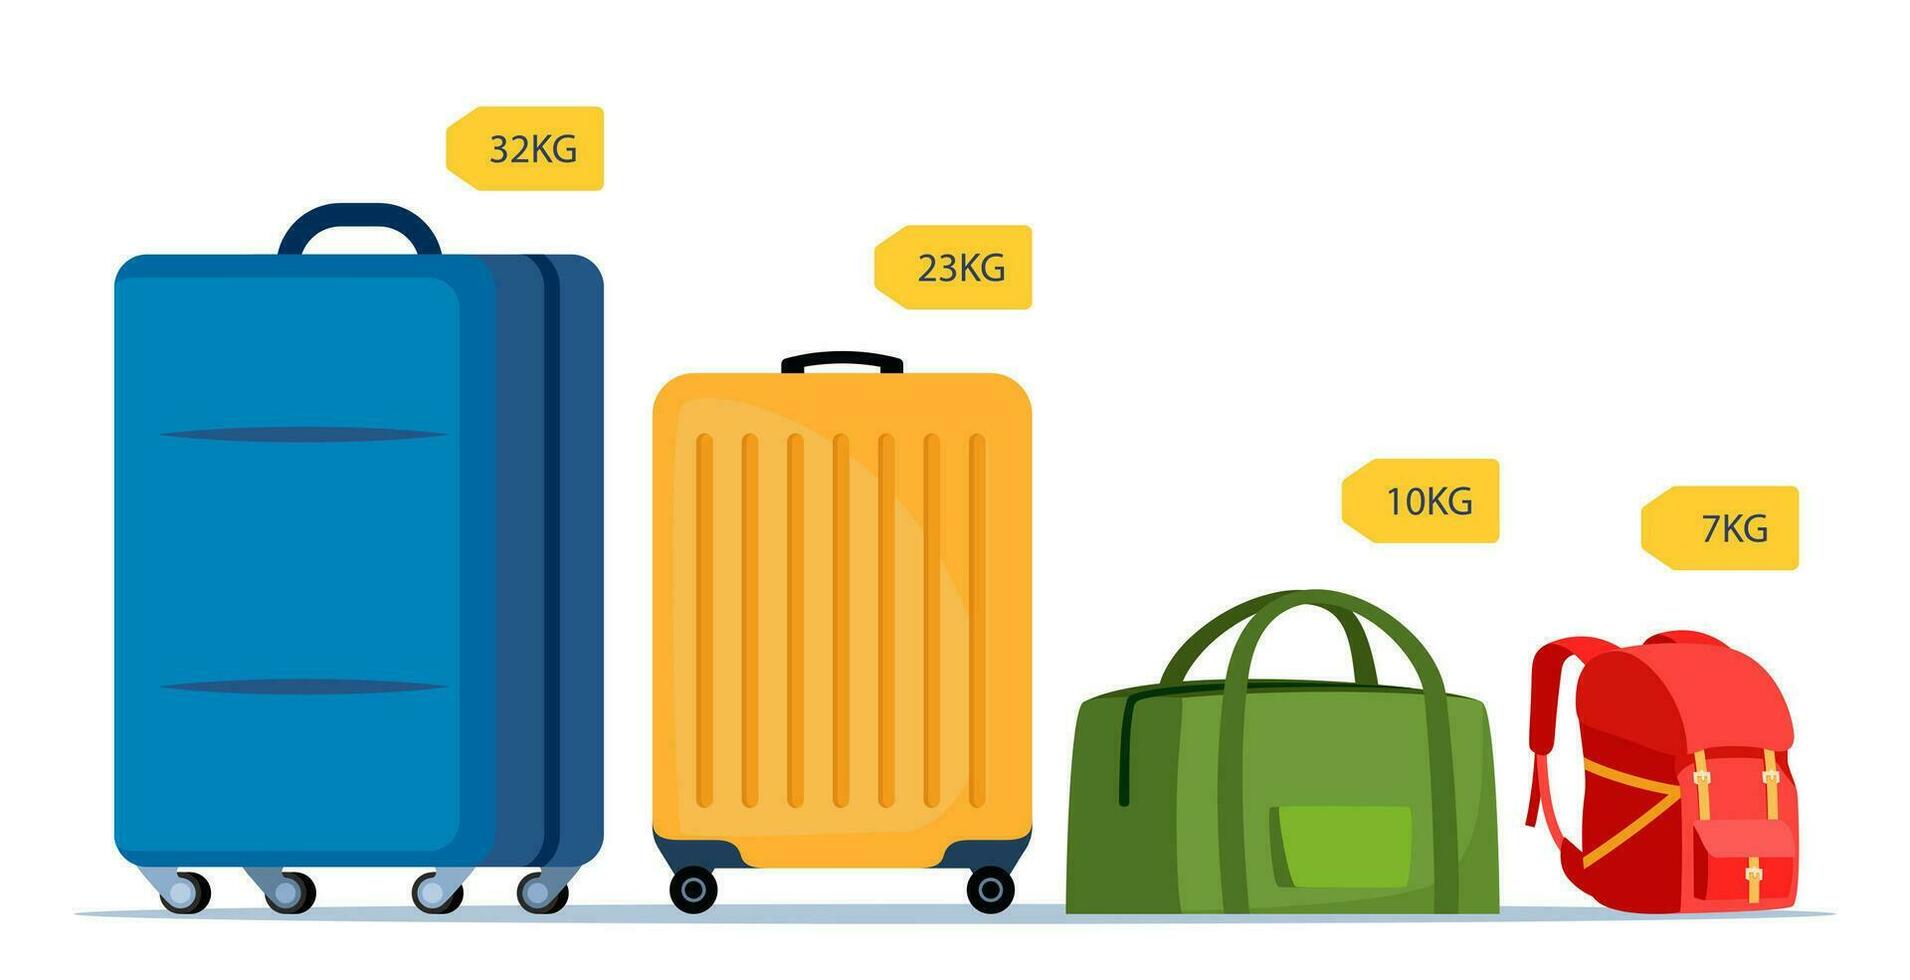 bagages allocation. à roues valise, sac à dos, sac avec dimensionnel flèches poids étiqueter. poids et Taille de bagage allocation. main bagage exigences pour air Voyage. vecteur illustration.